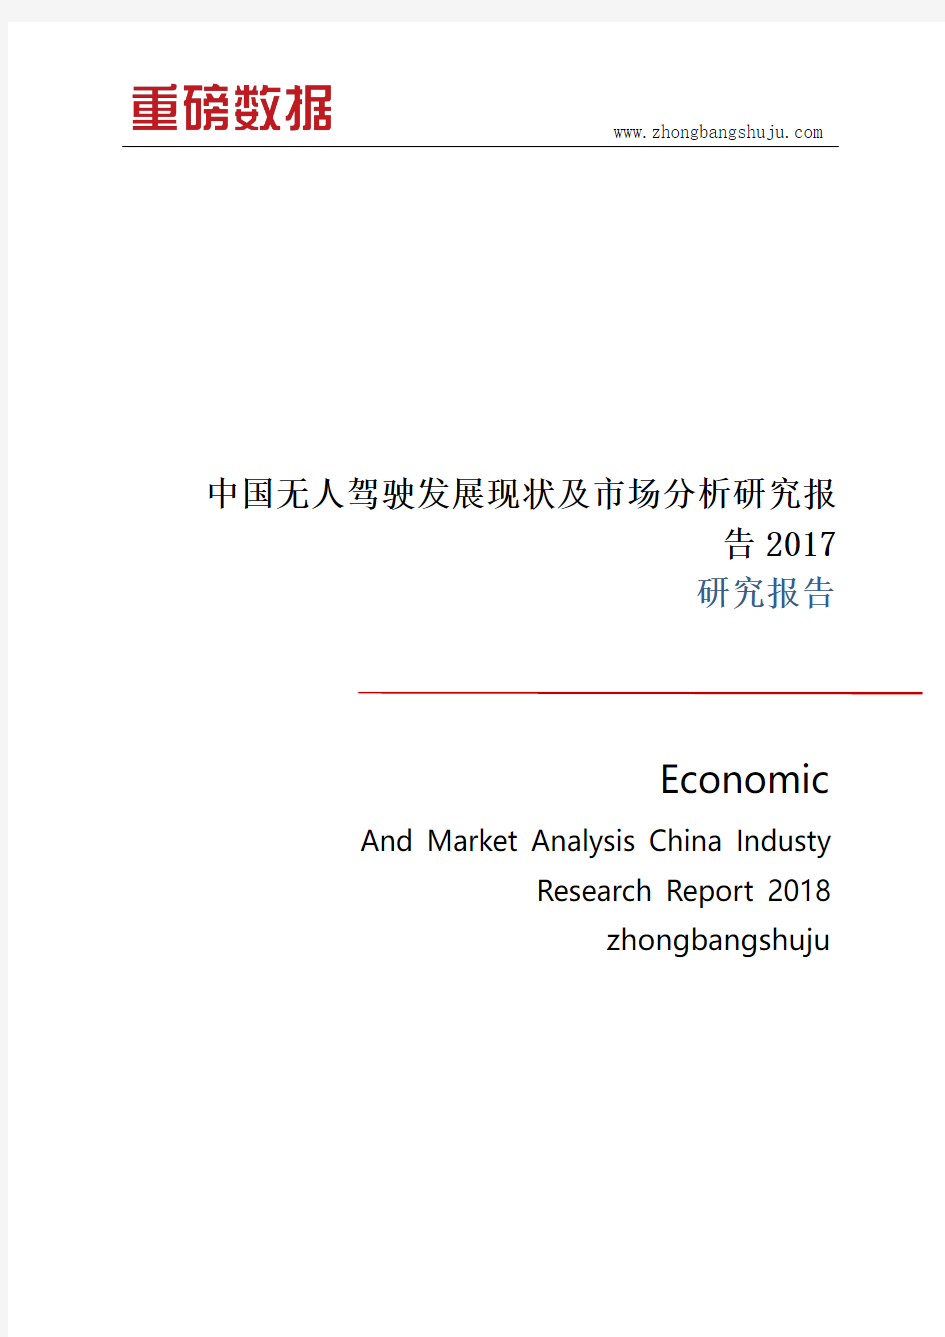 中国无人驾驶发展现状及市场分析研究报告